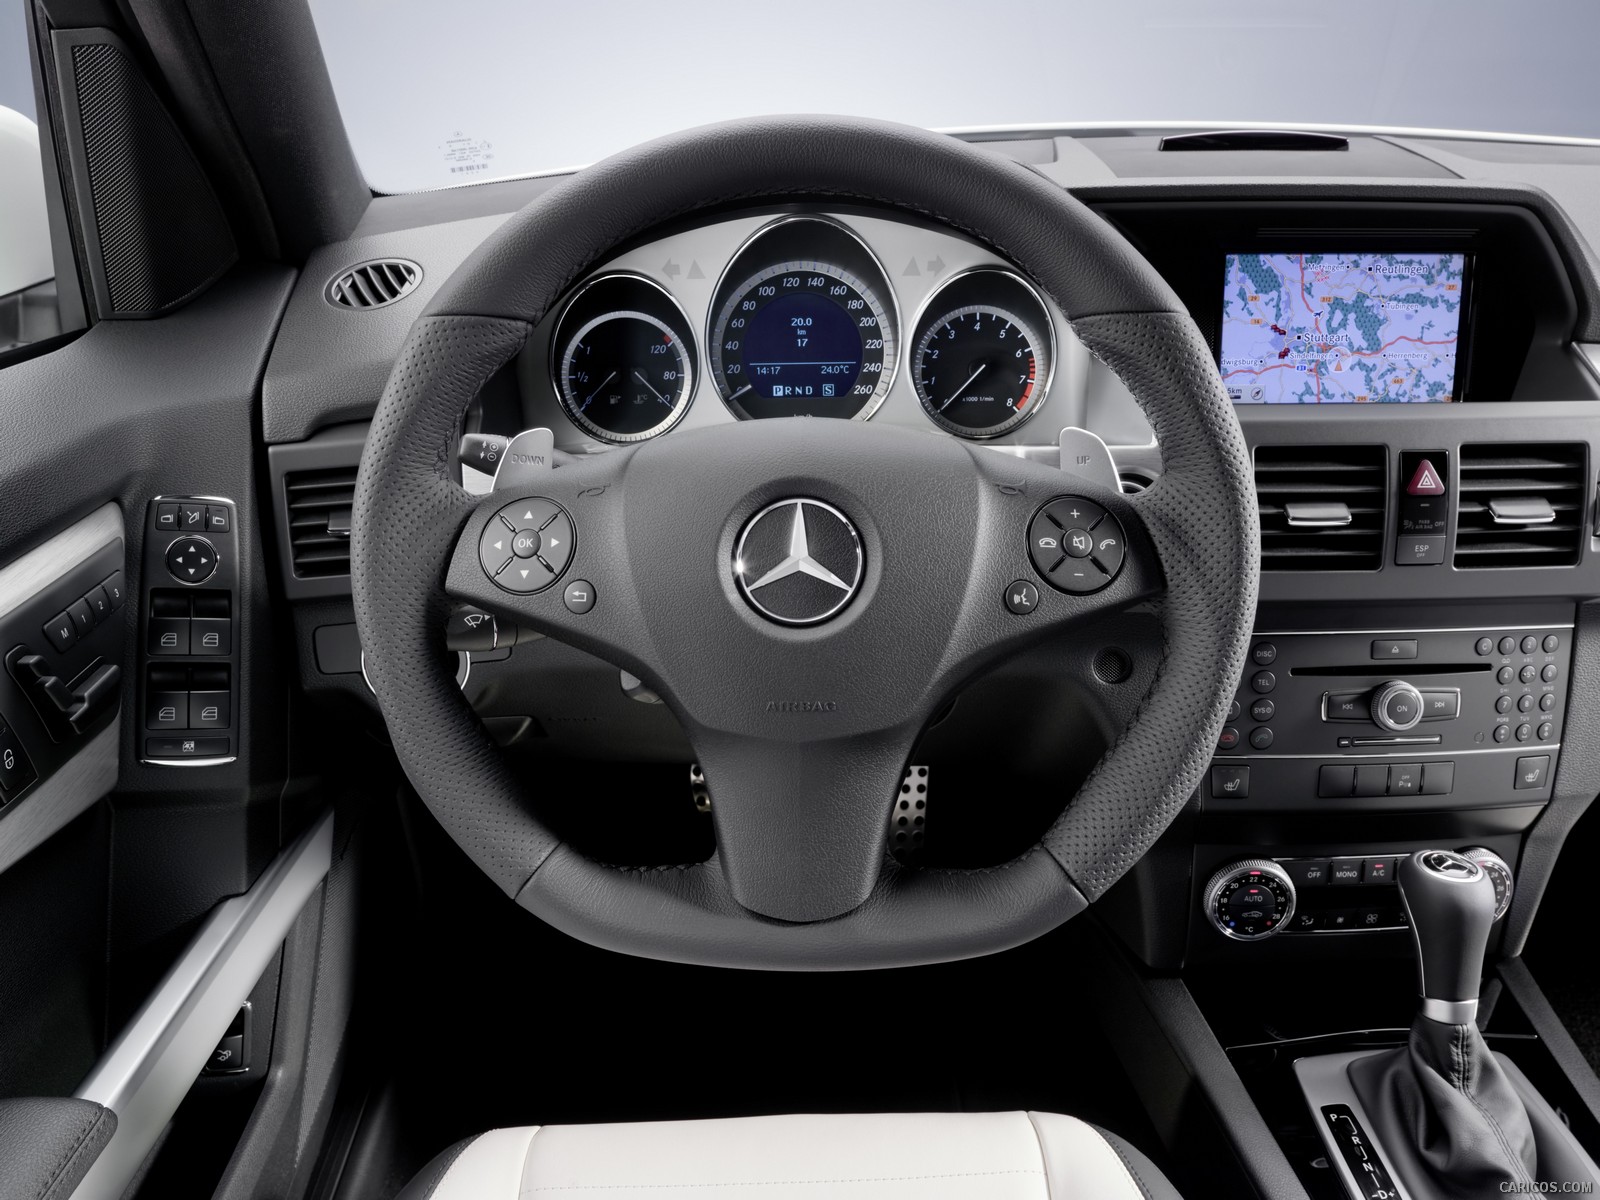 Mercedes-Benz GLK-Class  - Steering Wheel, #212 of 351